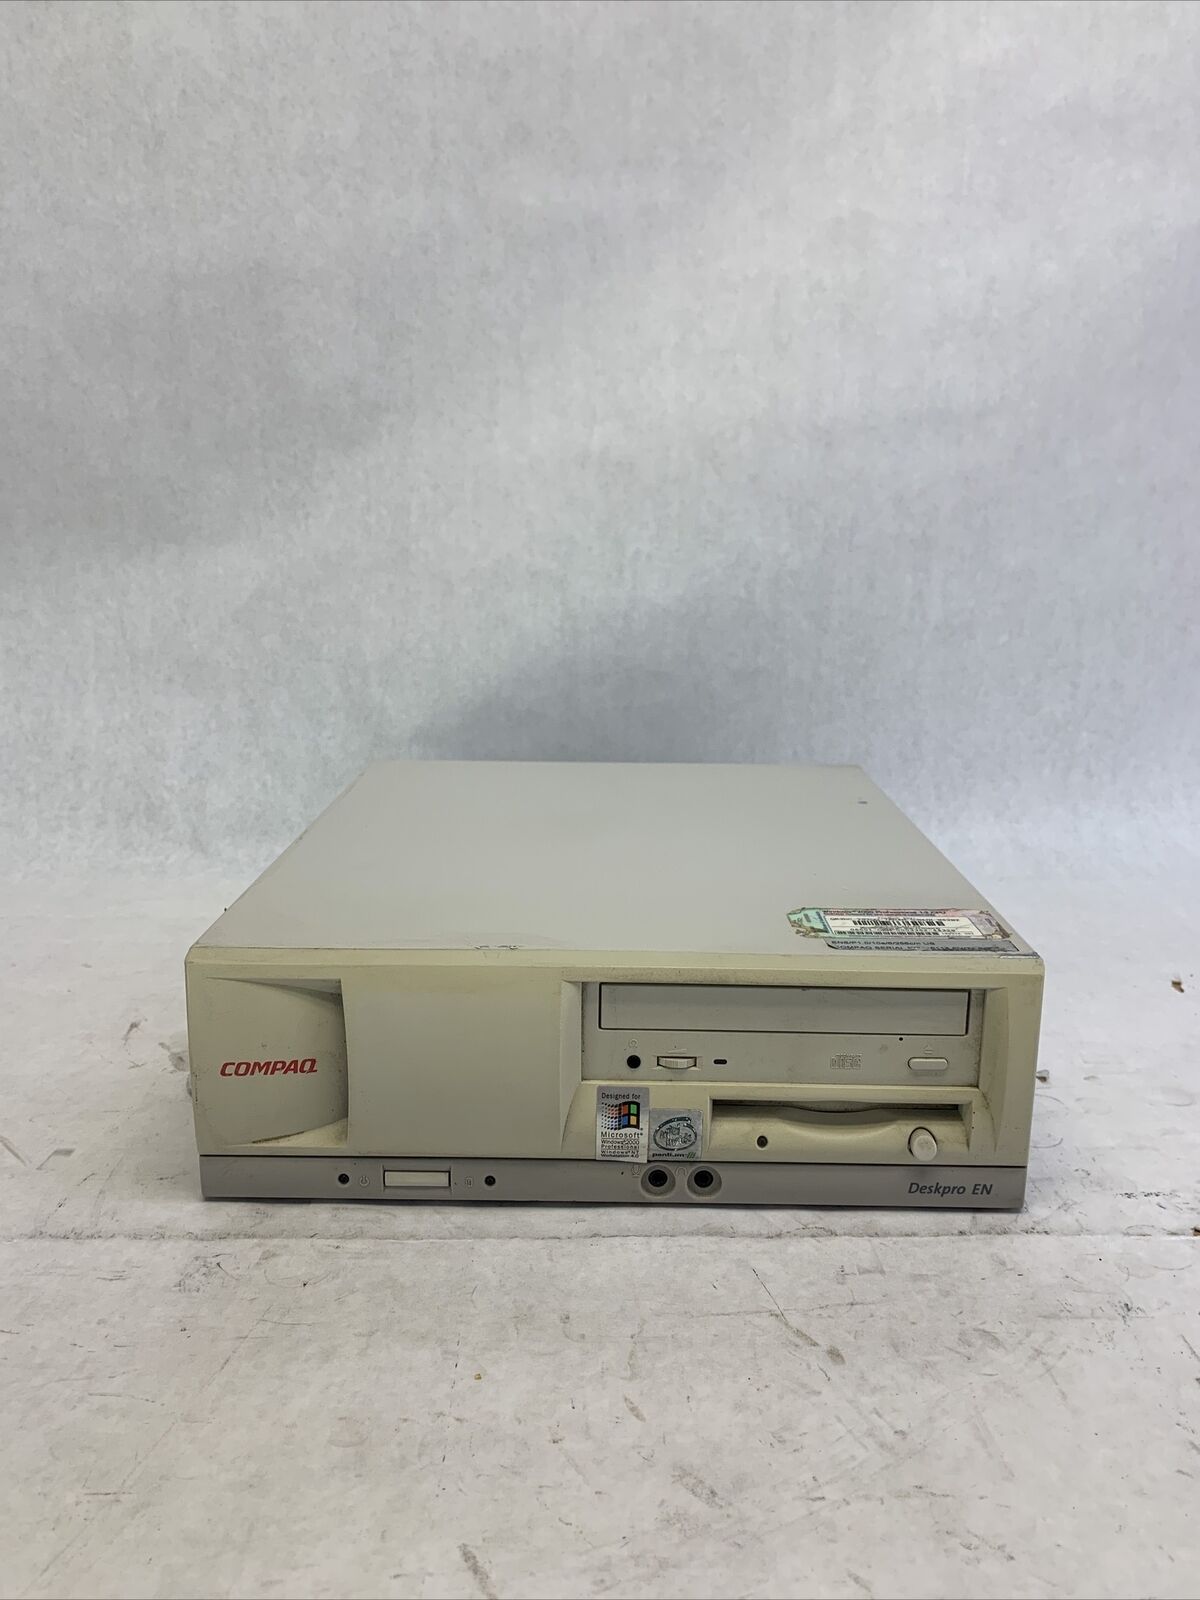 Compaq DeskPro EN Intel Pentium III 1GHz 256MB RAM No HDD No OS